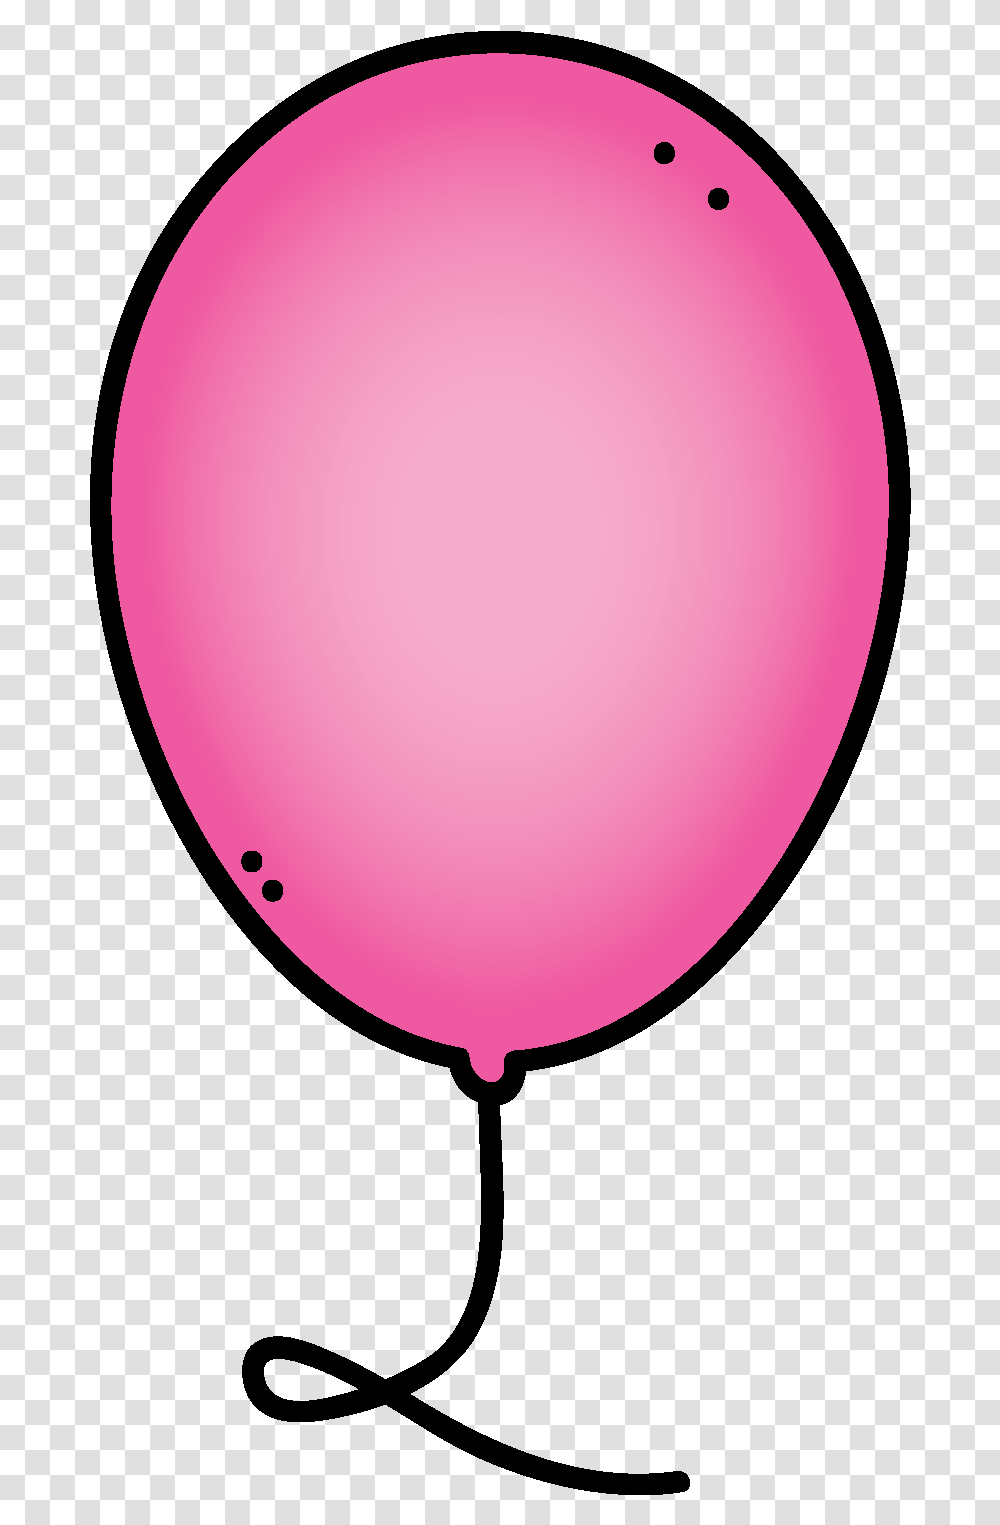 Popped Balloon Clip Art Simbolo De Proteccion Civil Transparent Png